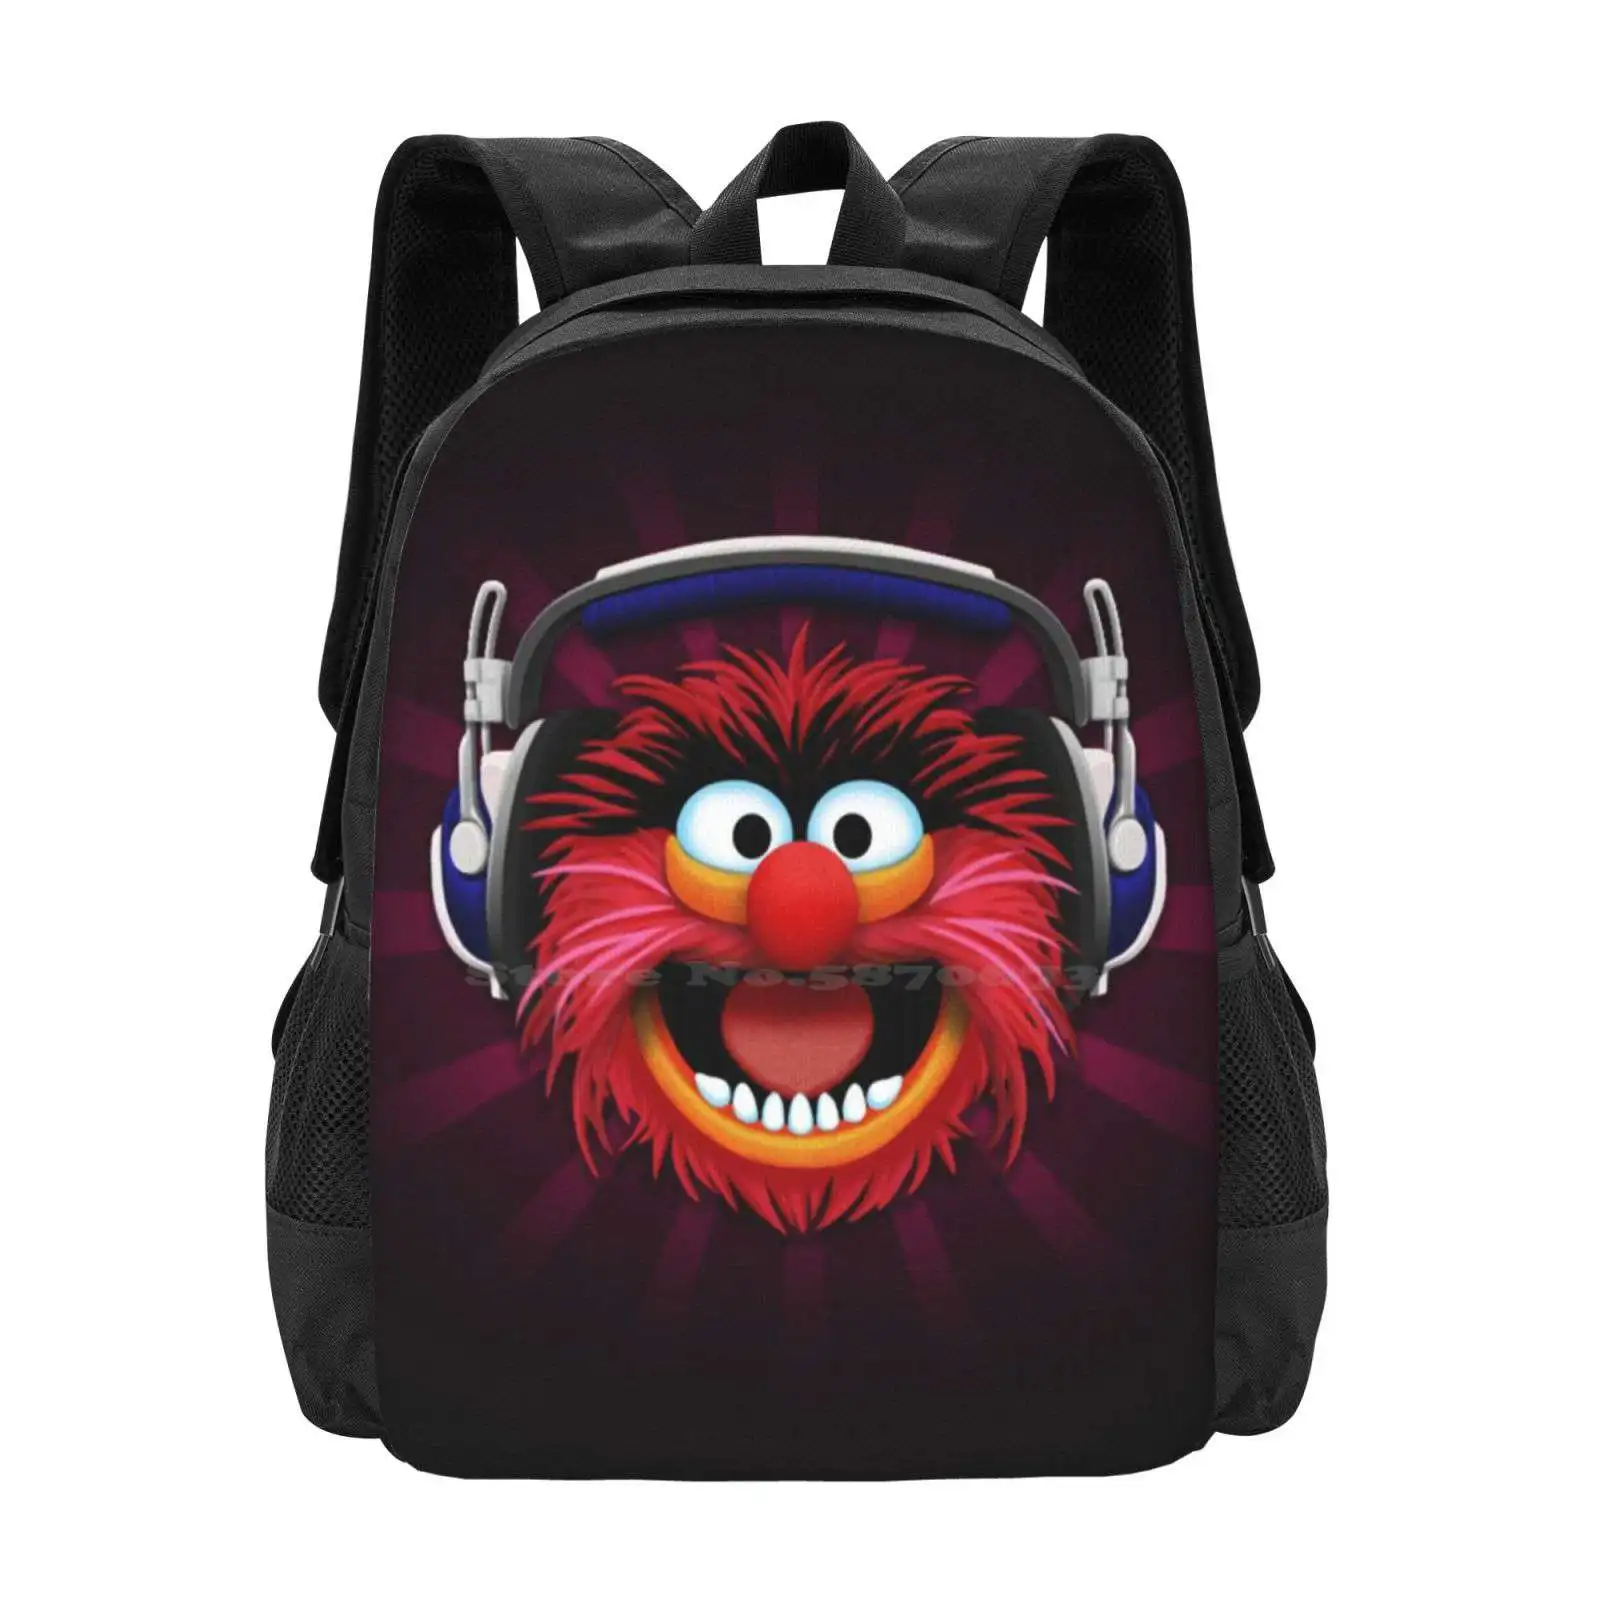 Рюкзак с рисунком животного в наушниках, школьные сумки, Барабанщик-животное на шоу барабанов, Животное в наушниках